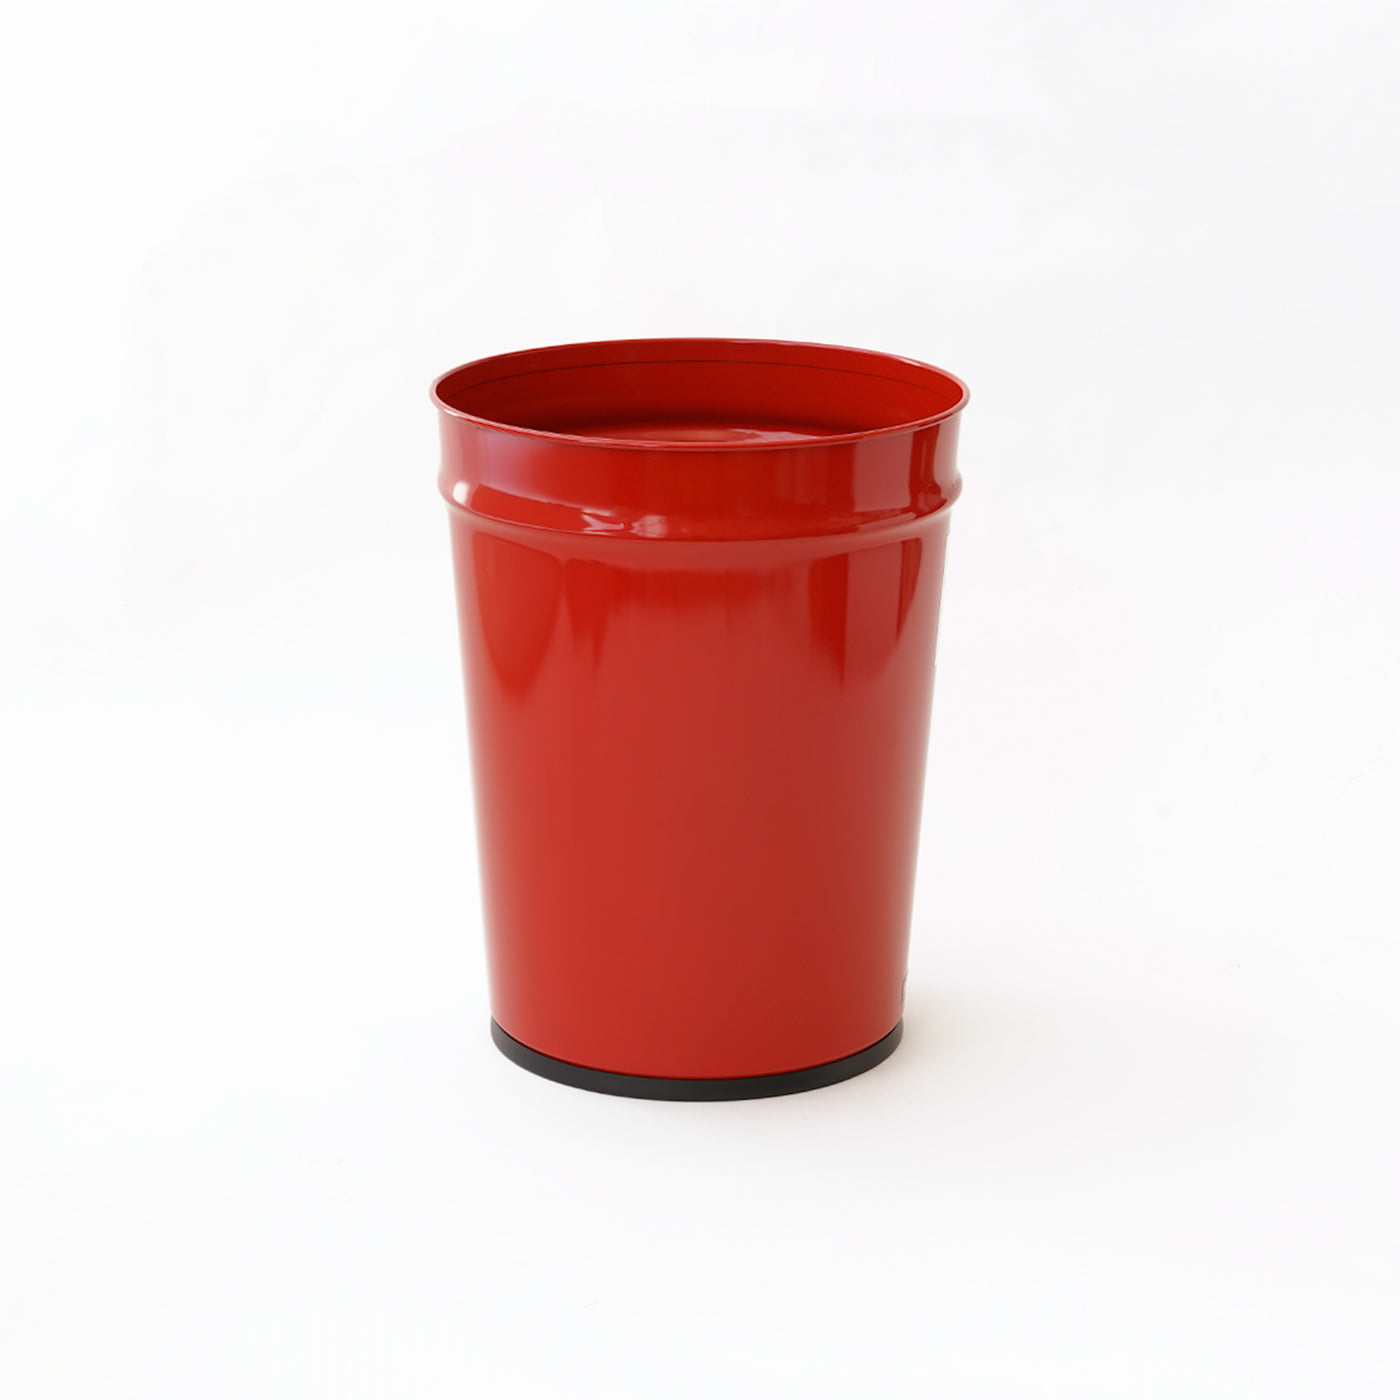 Bubuku Red Wastebasket (Large)